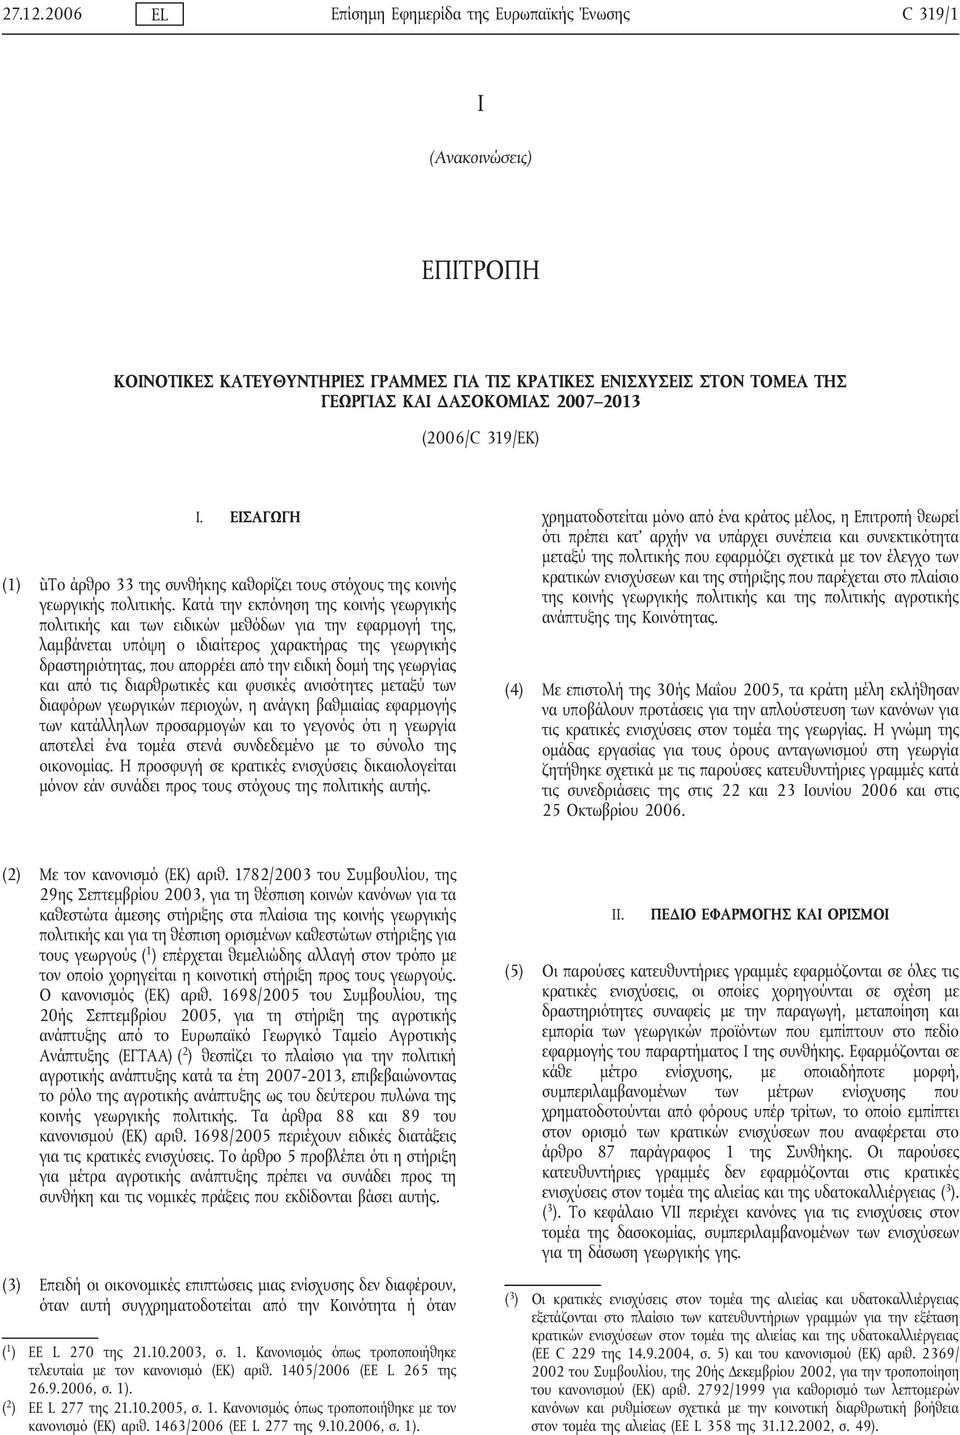 (2006/C 319/ΕΚ) I. ΕΙΣΑΓΩΓΗ (1) ùτο άρθρο 33 της συνθήκης καθορίζει τους στόχους της κοινής γεωργικής πολιτικής.